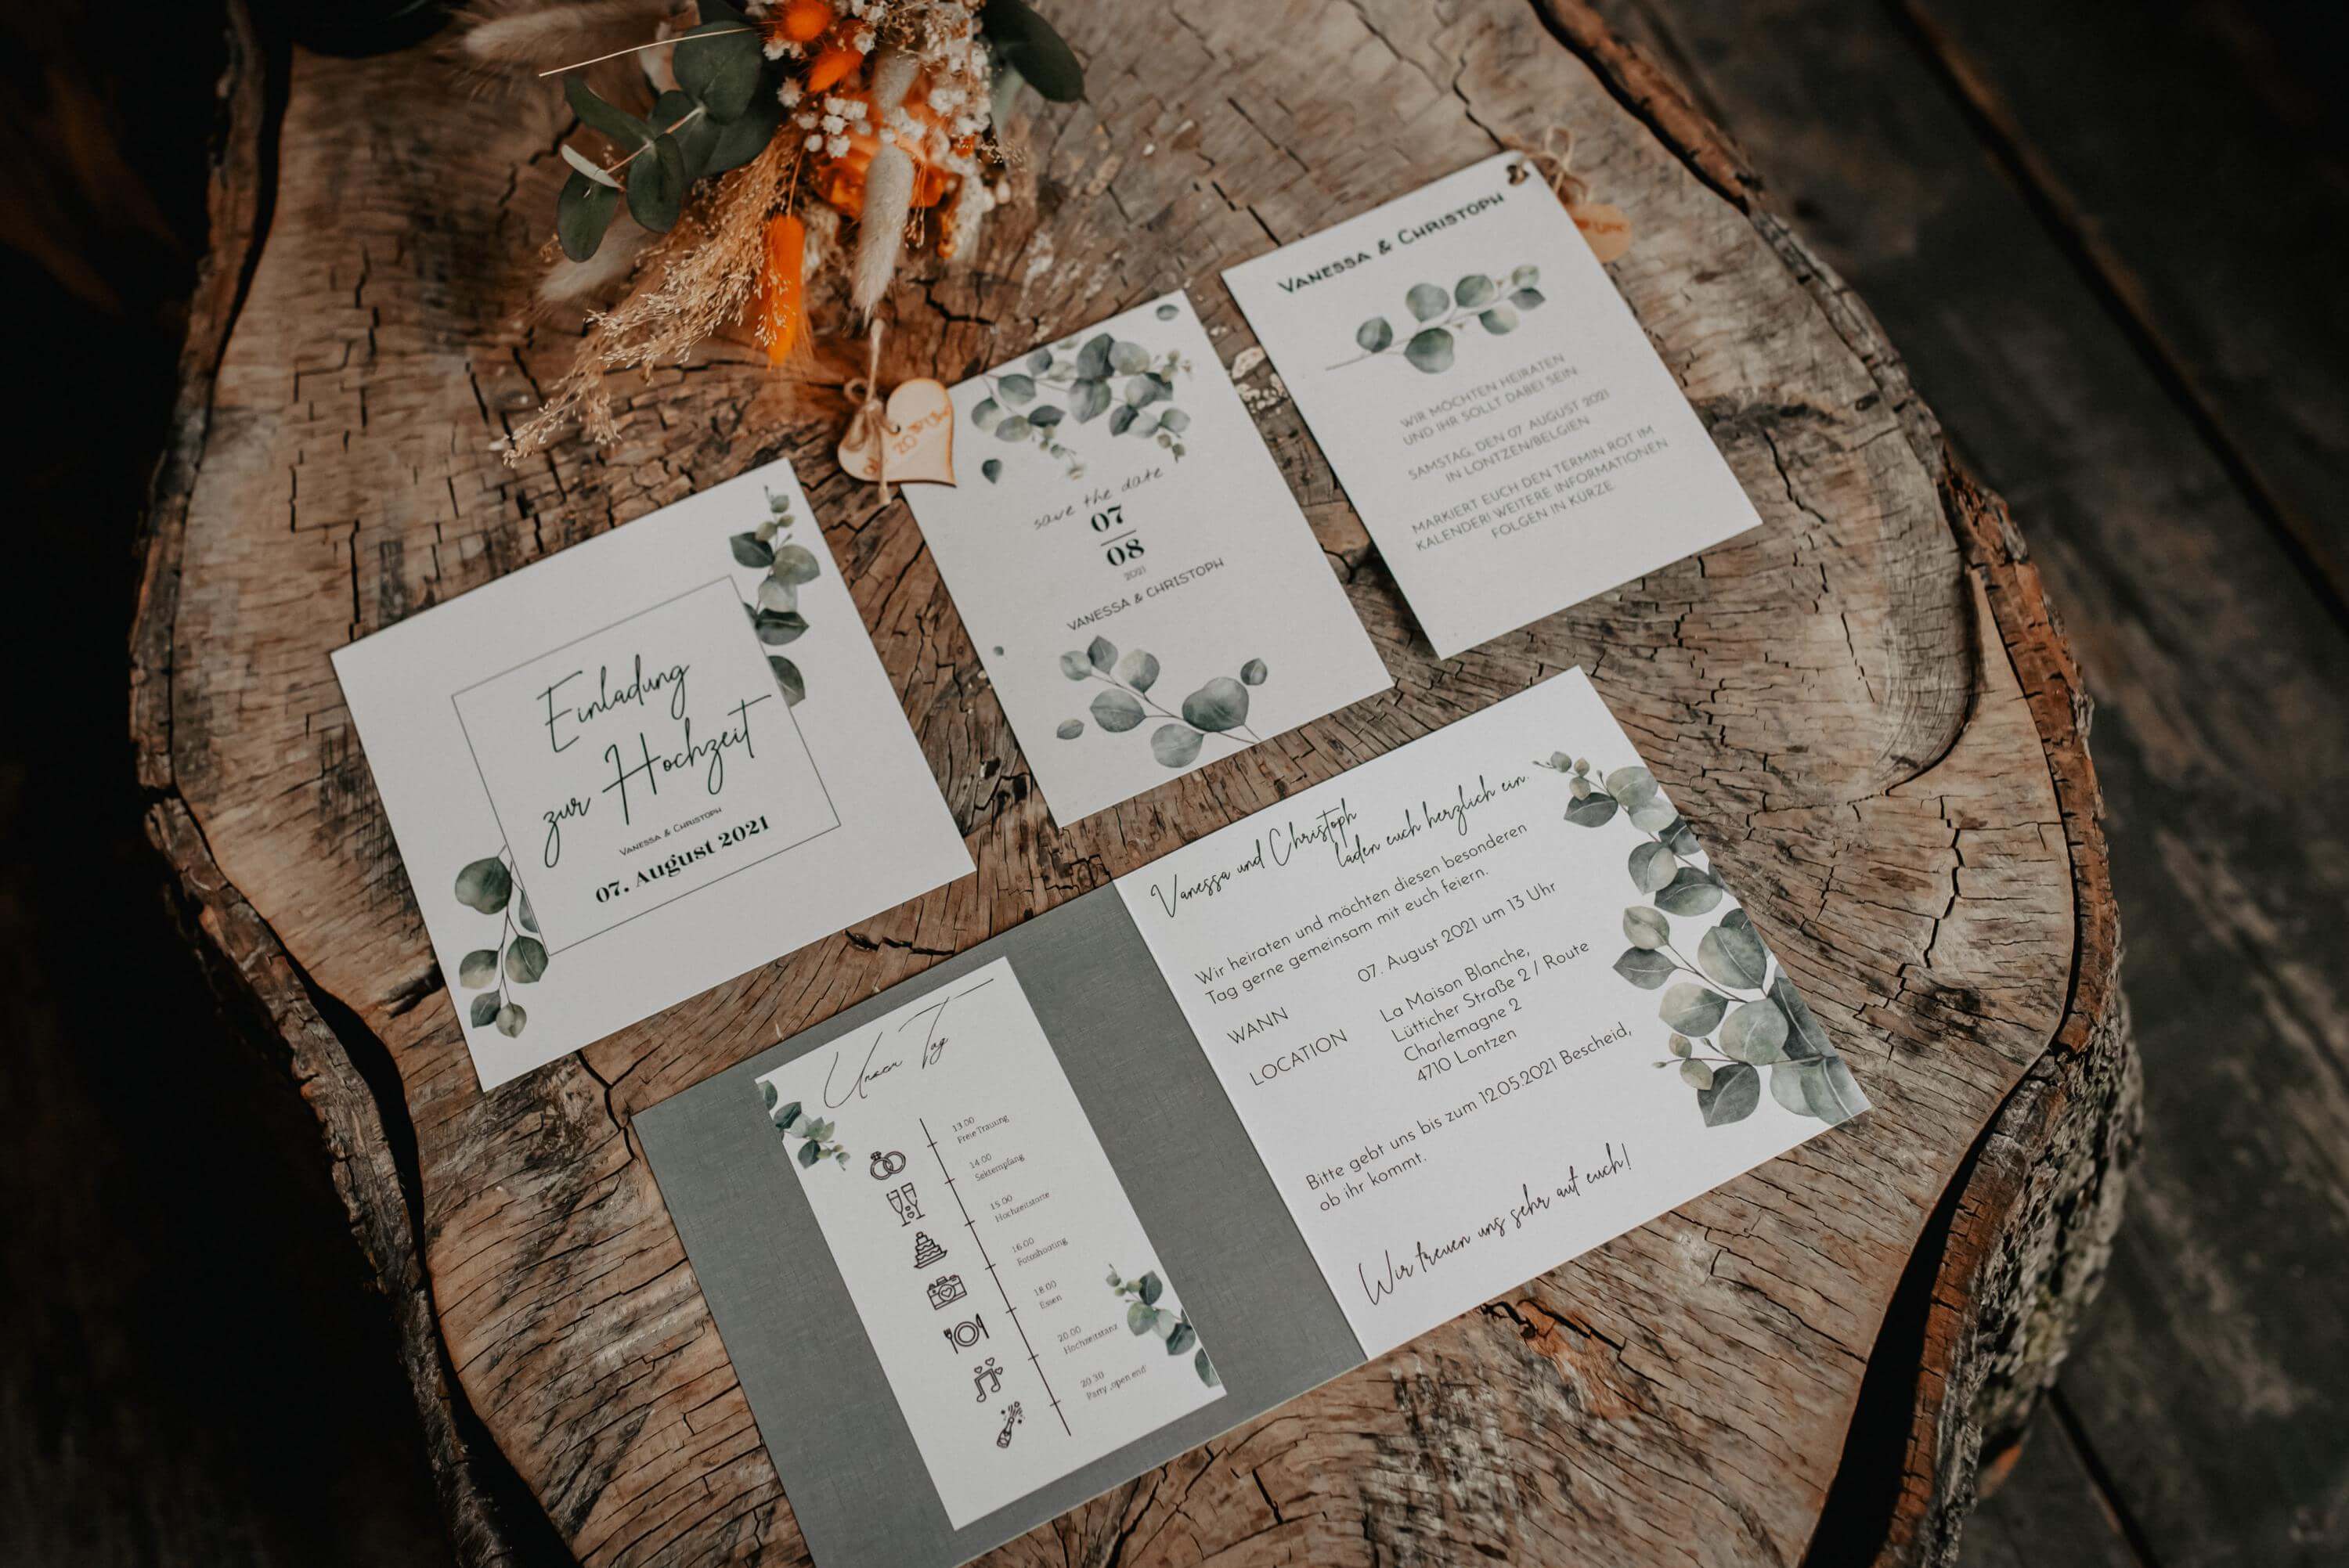 Auf einem Baumstumpf liegt die gesamte Papeterie einer Hochzeit in eukalyptus-farbenem Design mit 'Save the Date', Einladung, Menü- und Ablaufplan ausgebreitet aus.